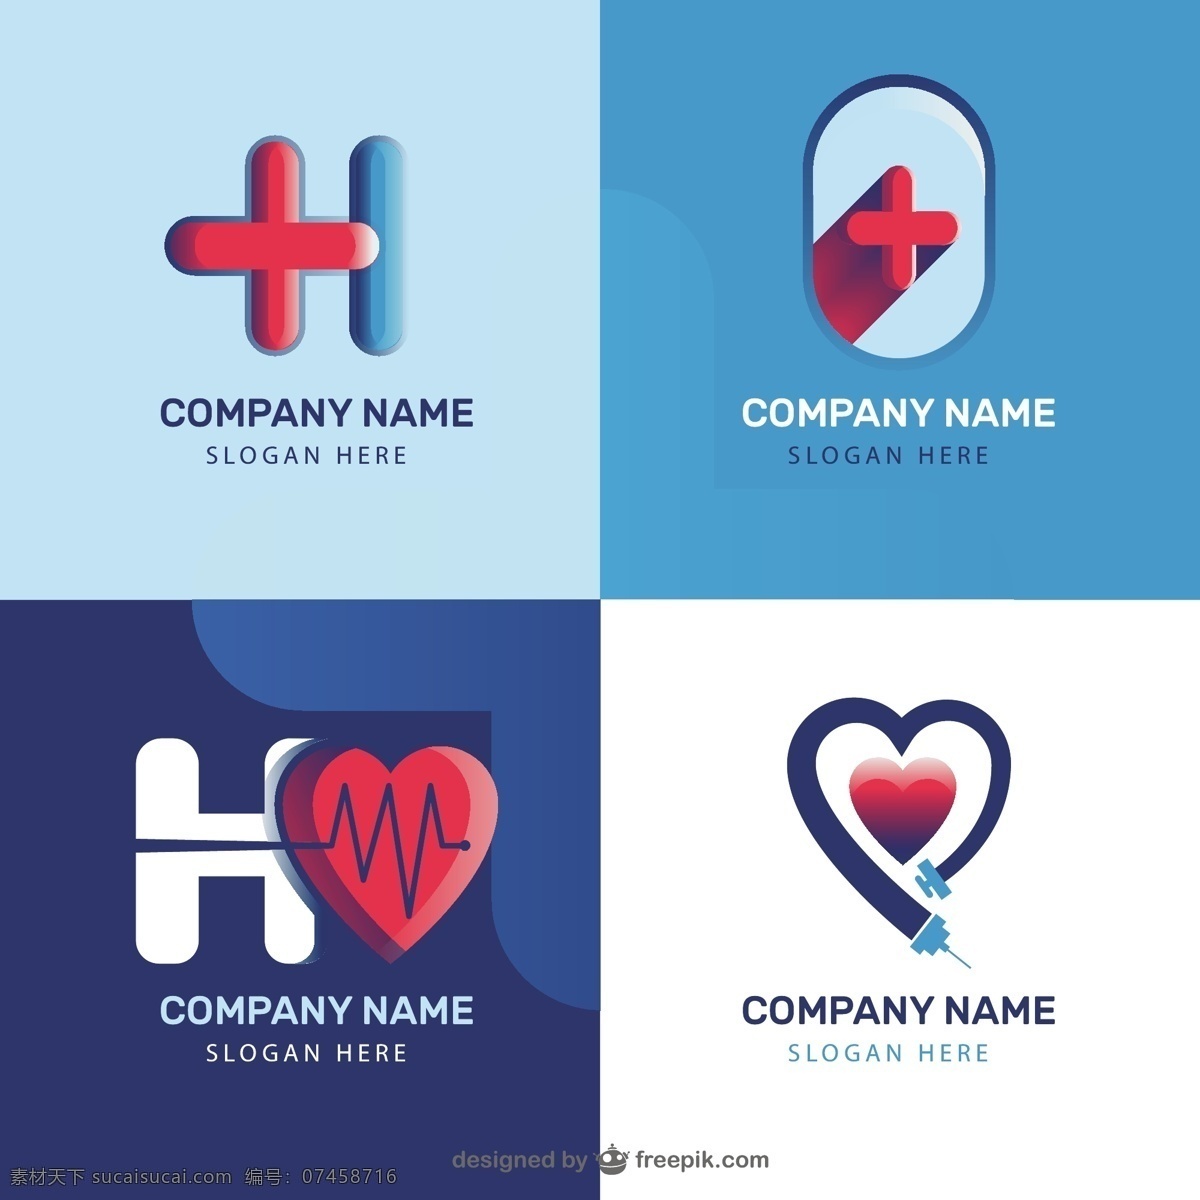 诊所标识模板 标识 商业 心脏 医疗 健康 医生 医院 交叉 企业 公司 品牌 企业形象 象征 身份 护理 模板 诊所 白色